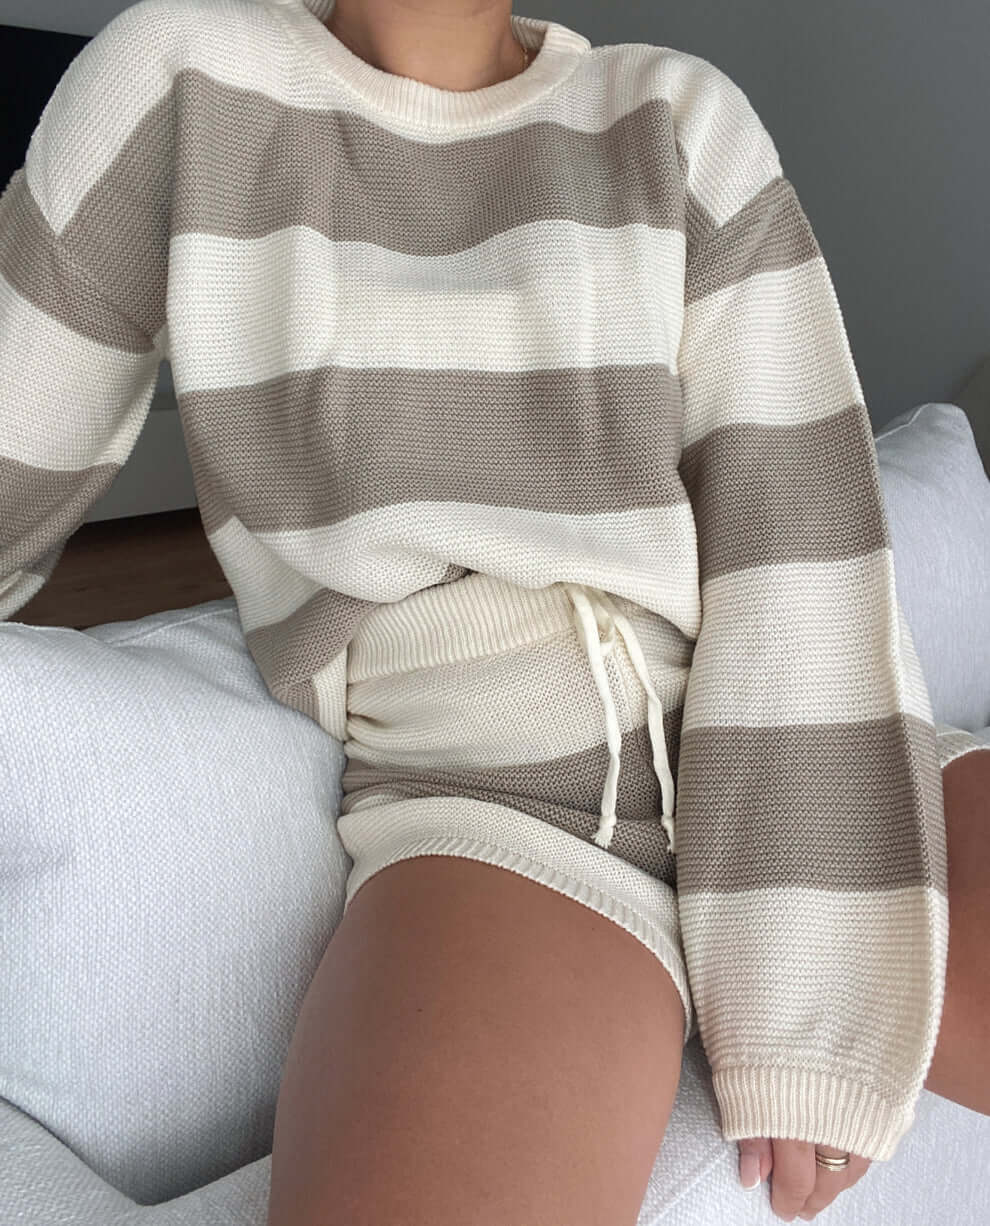 Envy knit shorts - Stripped ivory